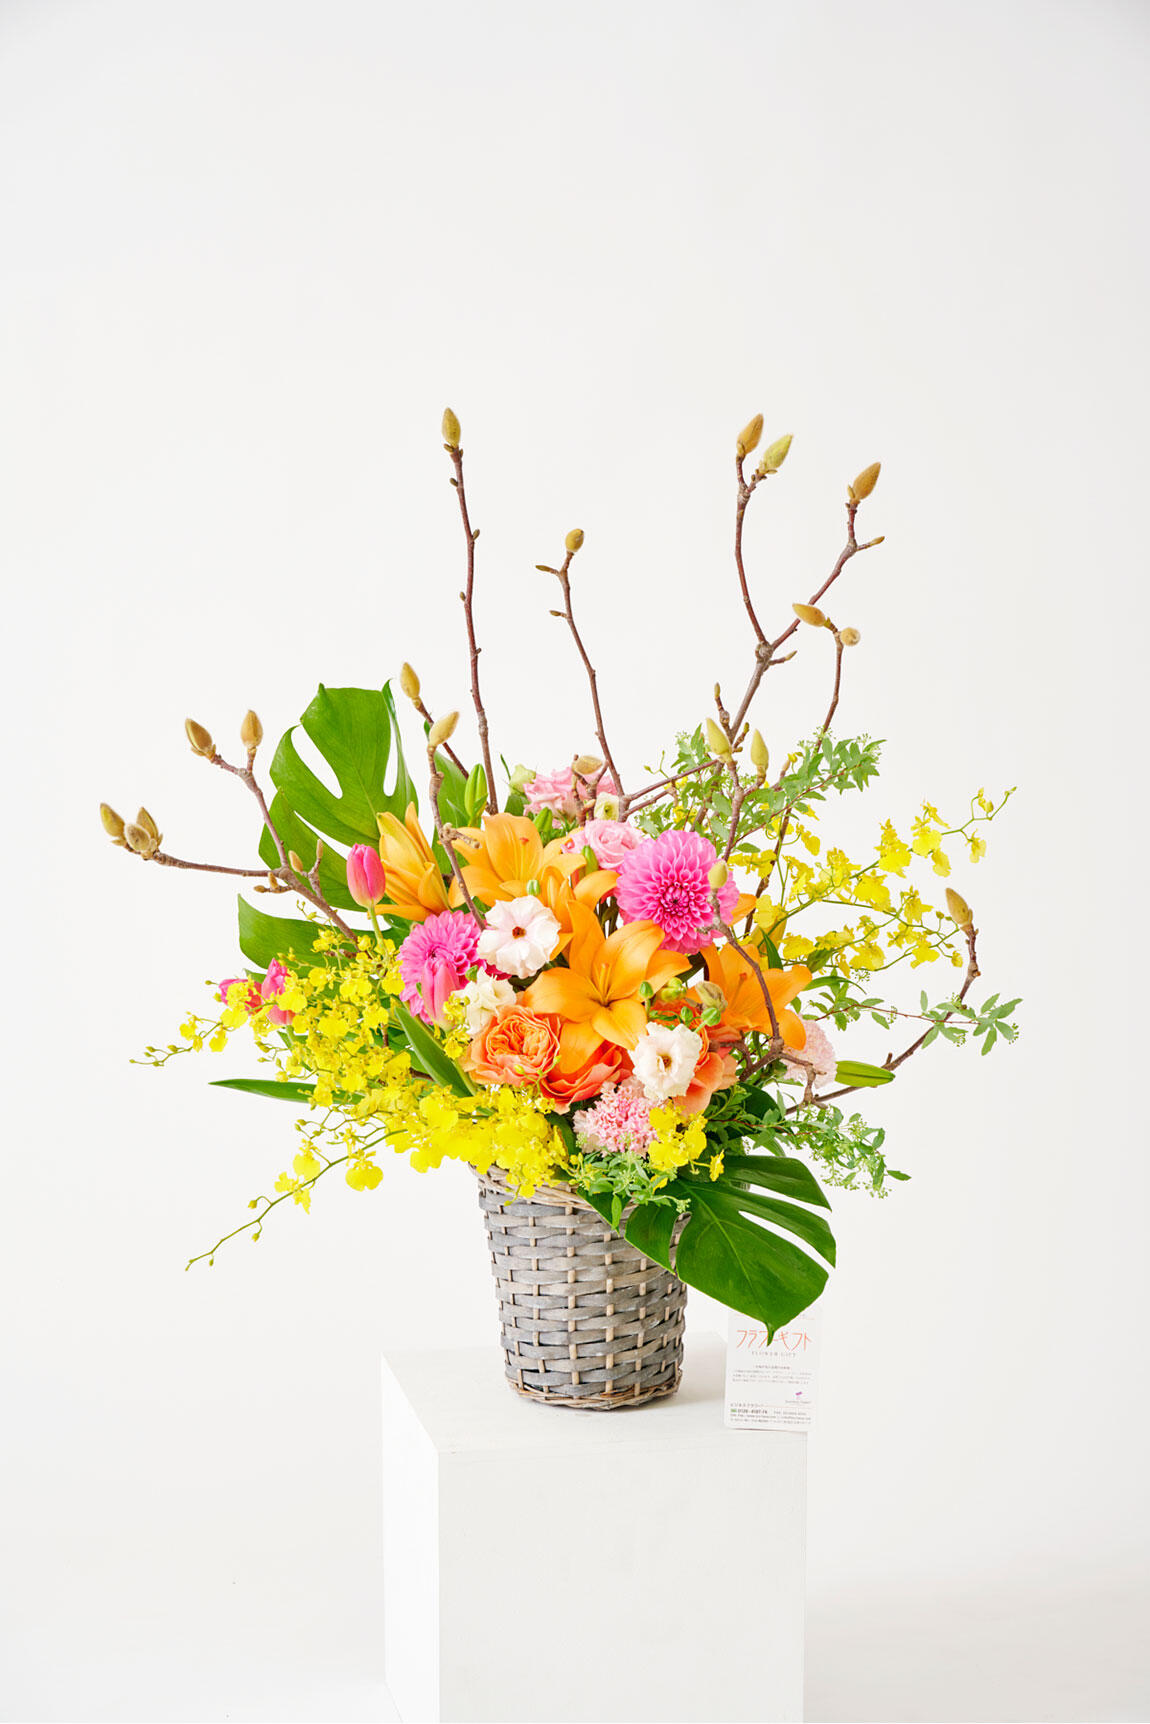 <p>木蓮（モクレン）のアレンジメントフラワーは3月までの春限定のお祝い花ですので、春の開店祝い、開業祝い、移転祝い、開院祝いなどのお祝い花にいかがでしょうか。</p>